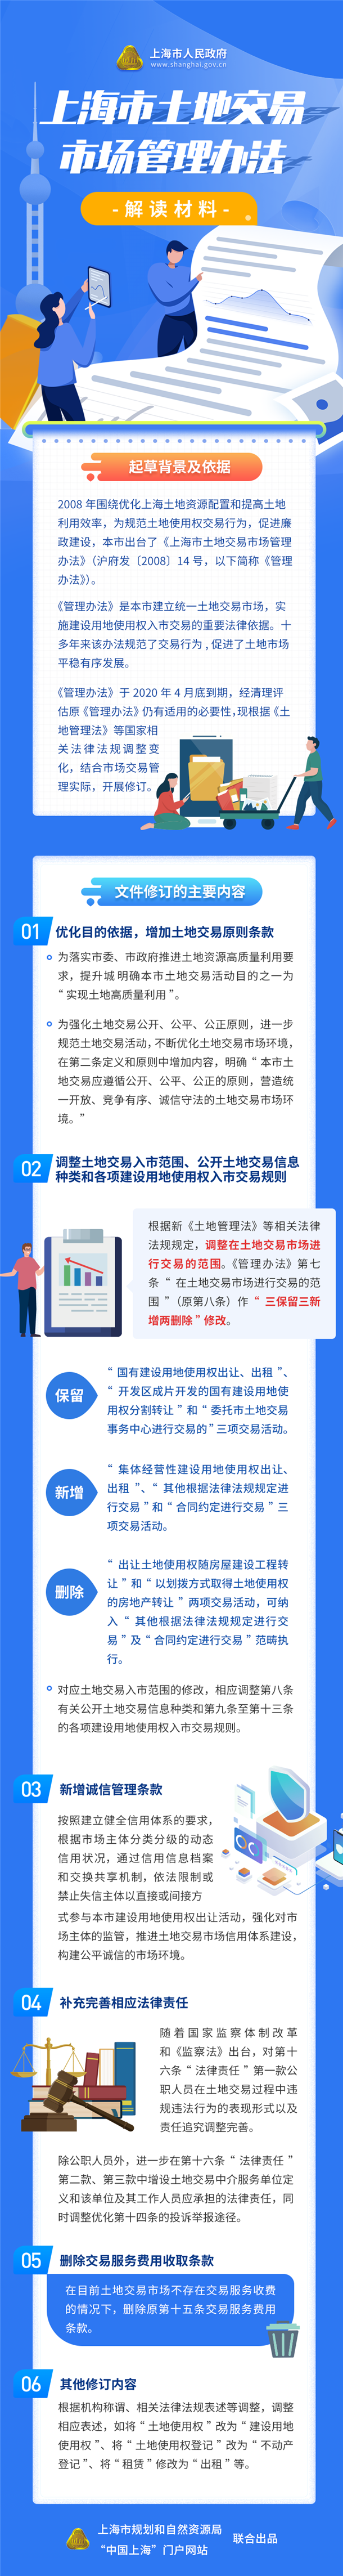 图解《上海市土地交易市场管理办法》